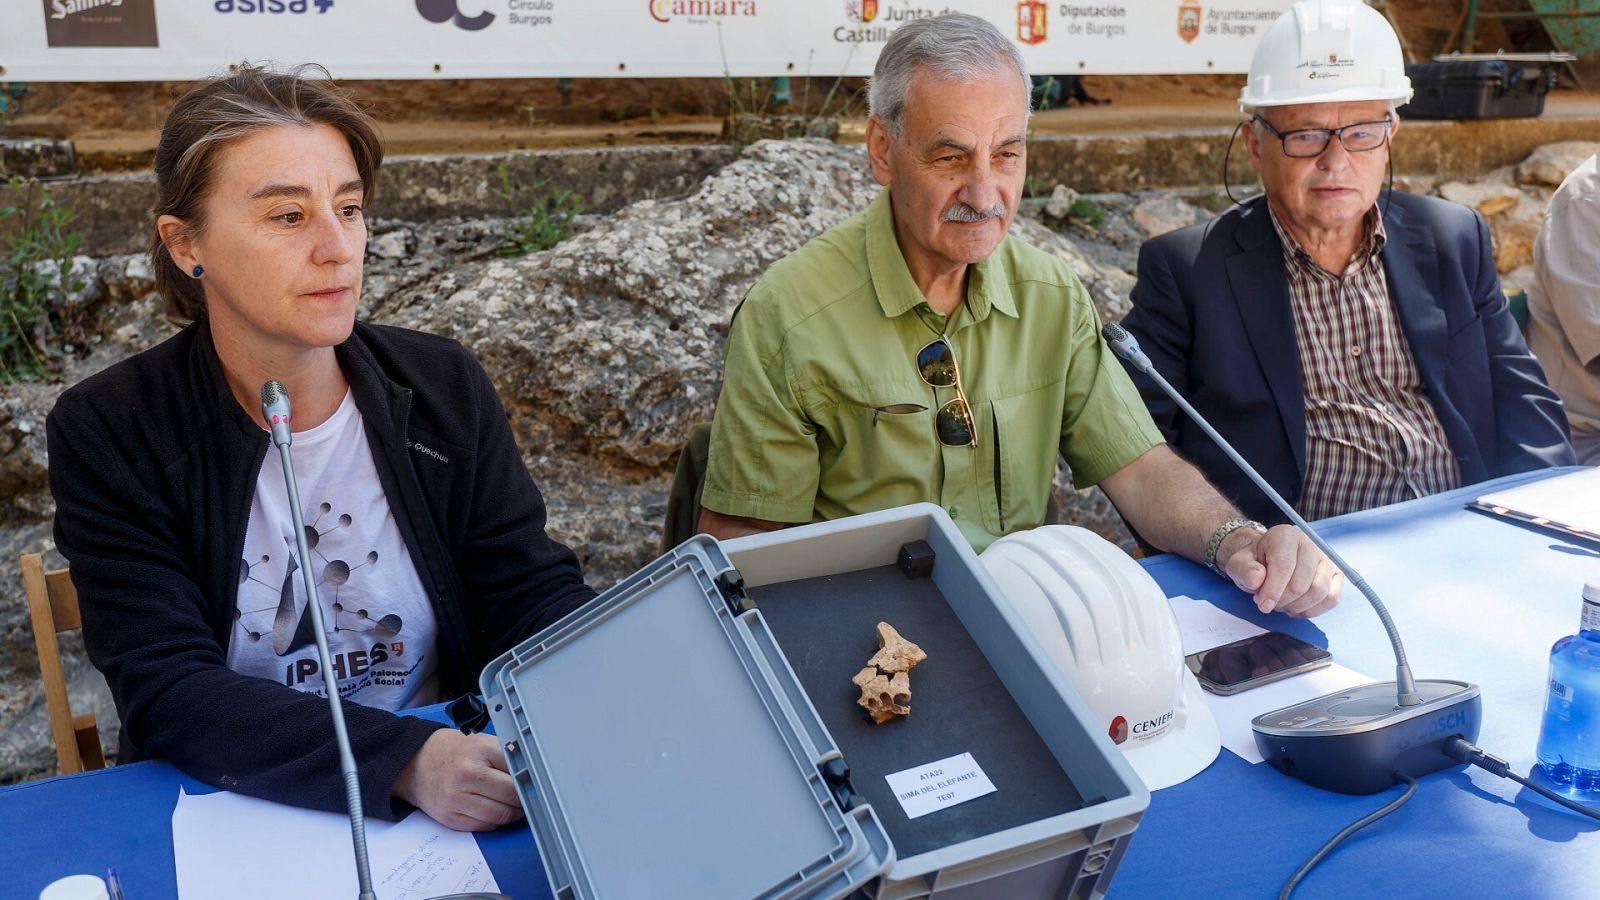 Rosa Huguet, coordinadora del yacimiento de la Sima del Elefante de Atapuerca, junto al coodirector, Bermudez de Castro, y el consejero de Cultura, Gonzalo Santonja